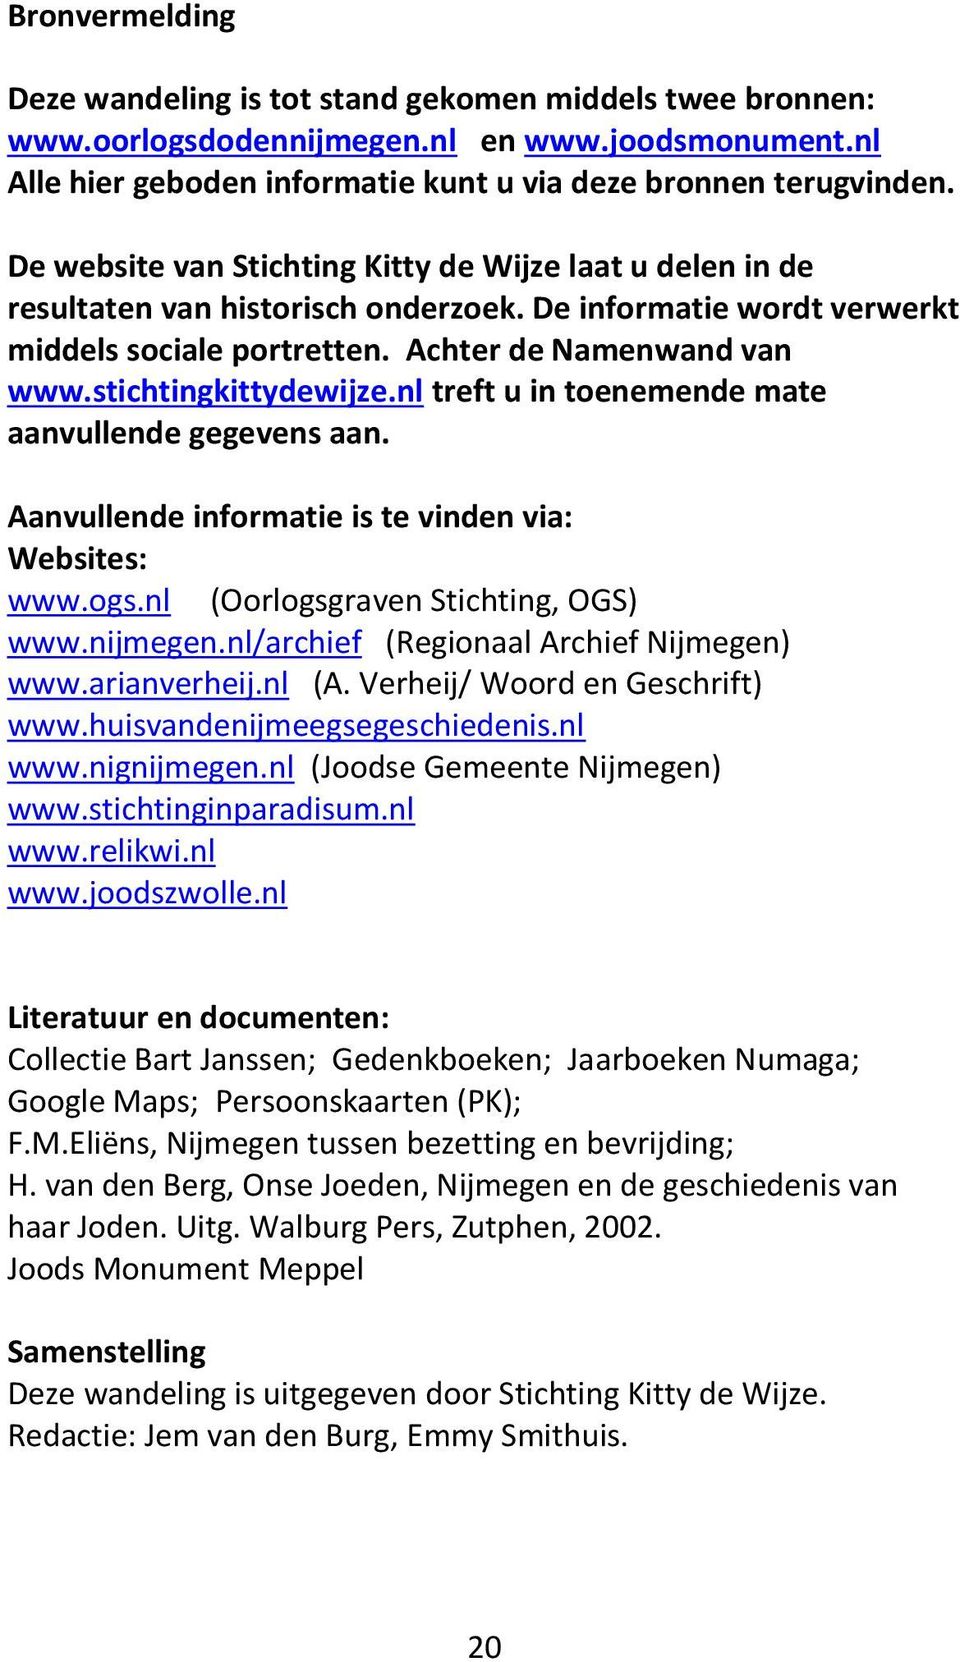 stichtingkittydewijze.nl treft u in toenemende mate aanvullende gegevens aan. Aanvullende informatie is te vinden via: Websites: www.ogs.nl (Oorlogsgraven Stichting, OGS) www.nijmegen.